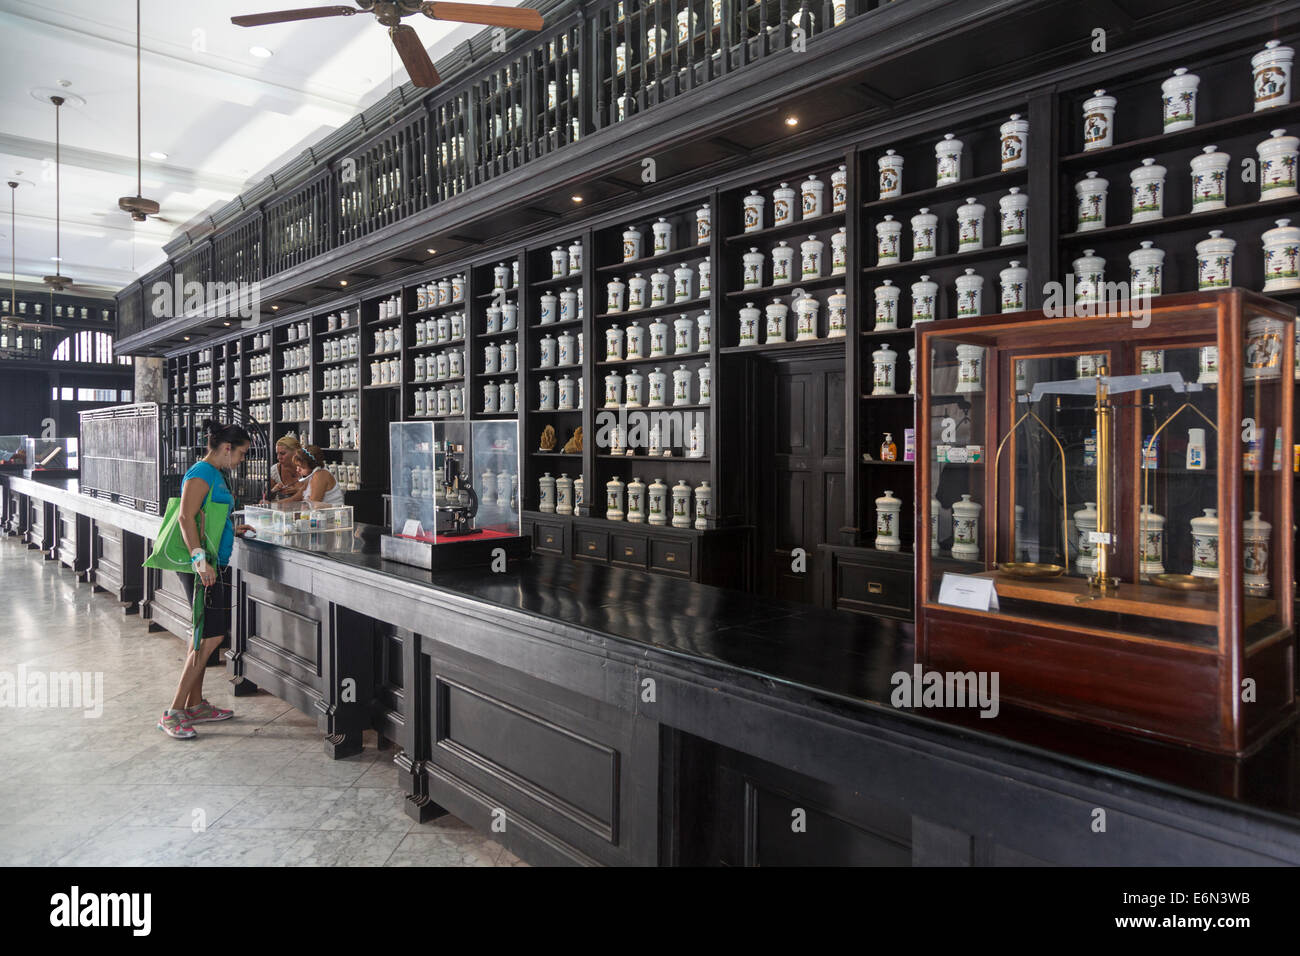 shelves full of apothecary jars, Drogueria Johnson pharmacy, Havana, Cuba Stock Photo